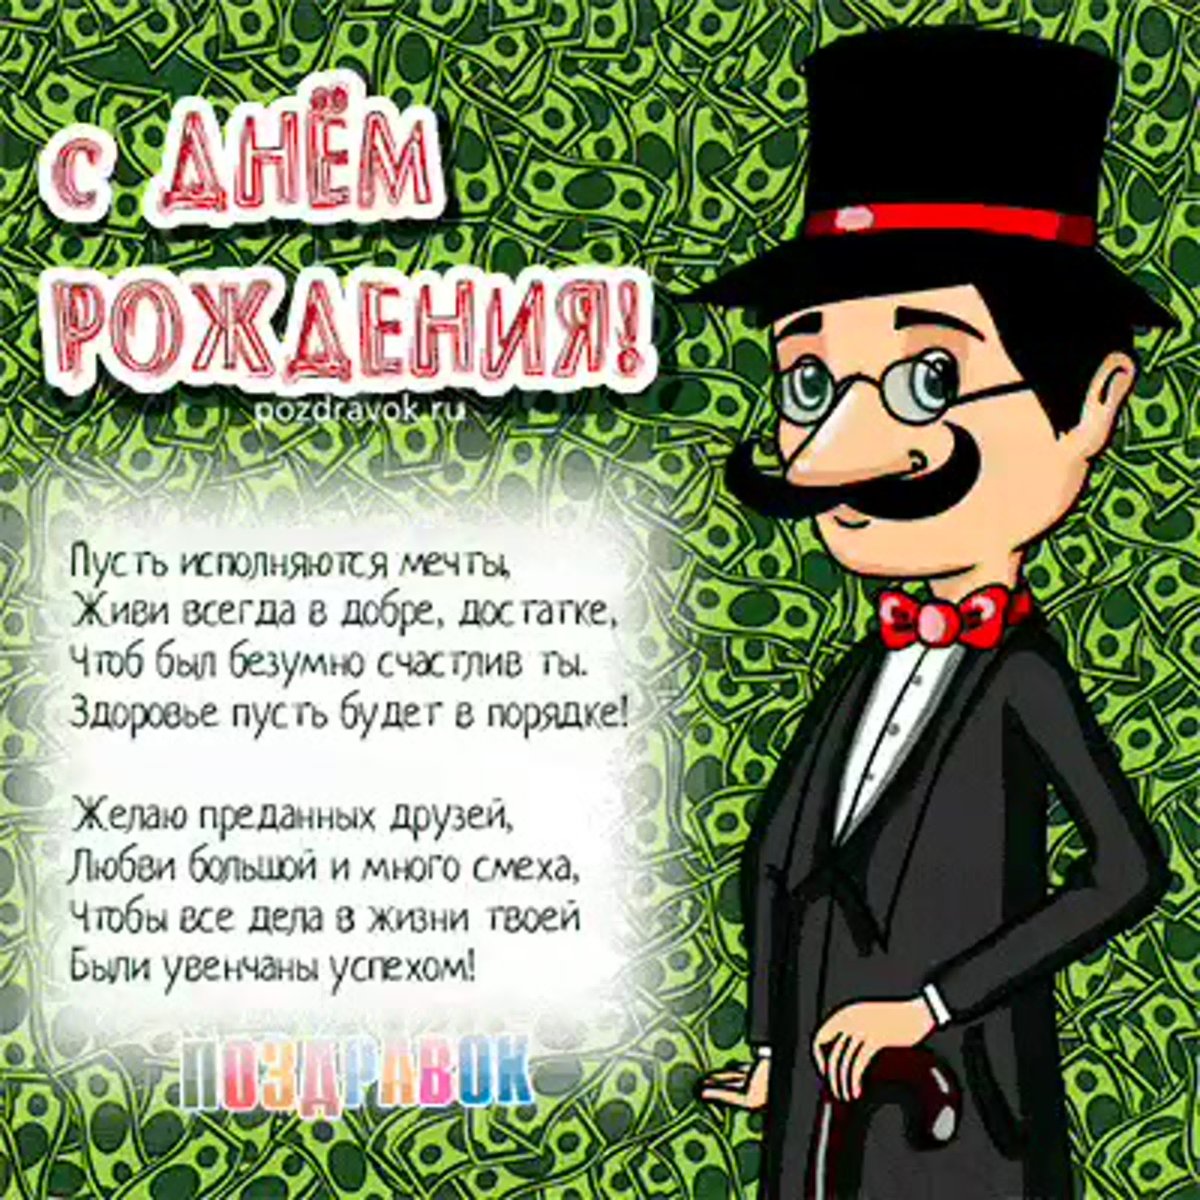 Поздравления с днем рождения армянину мужчине